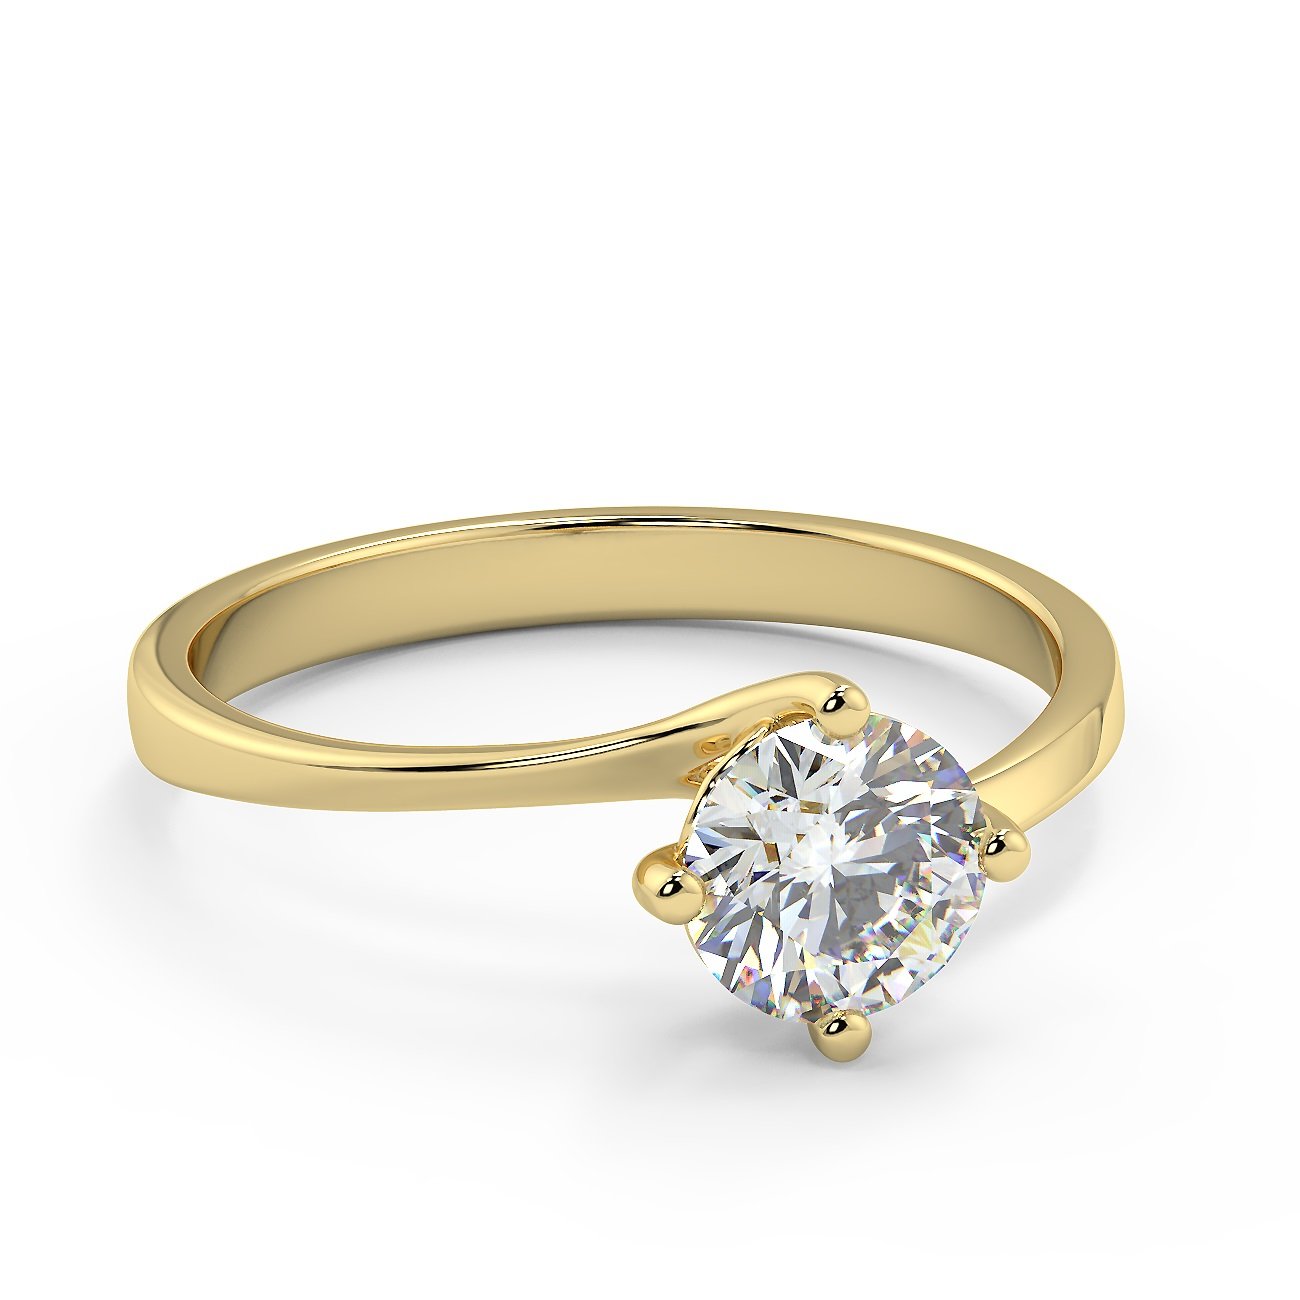 Anello di fidanzamento solitario con diamante in Oro Giallo 18ct - R998